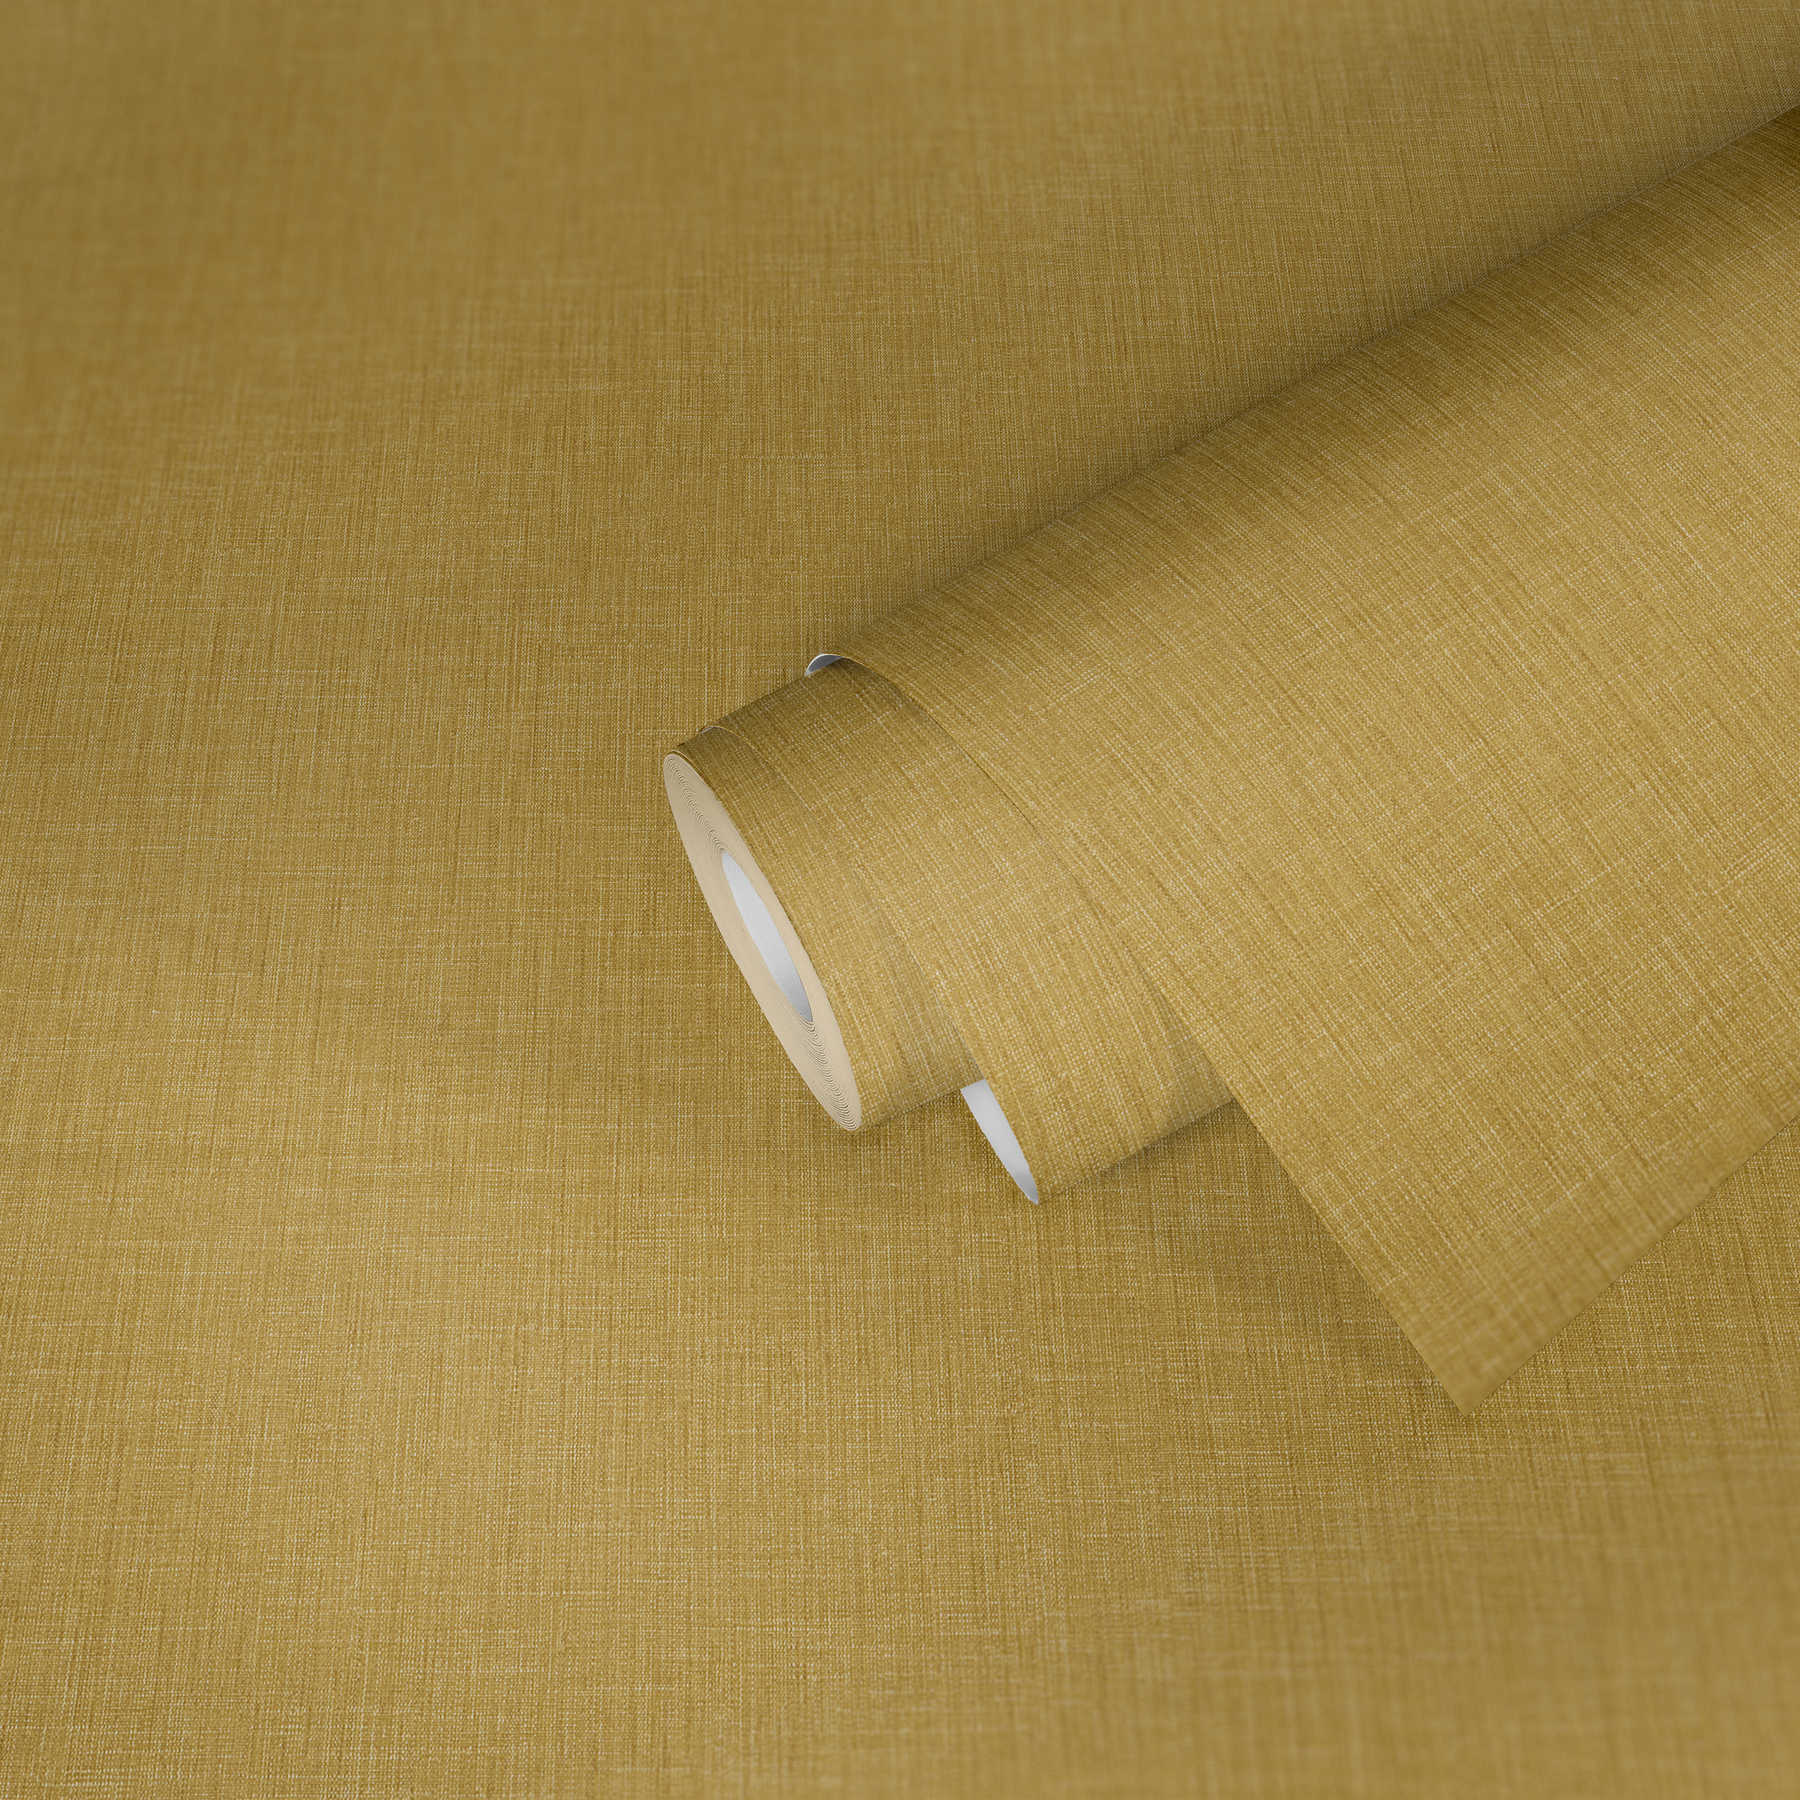             Carta da parati liscia con struttura tessile - giallo
        